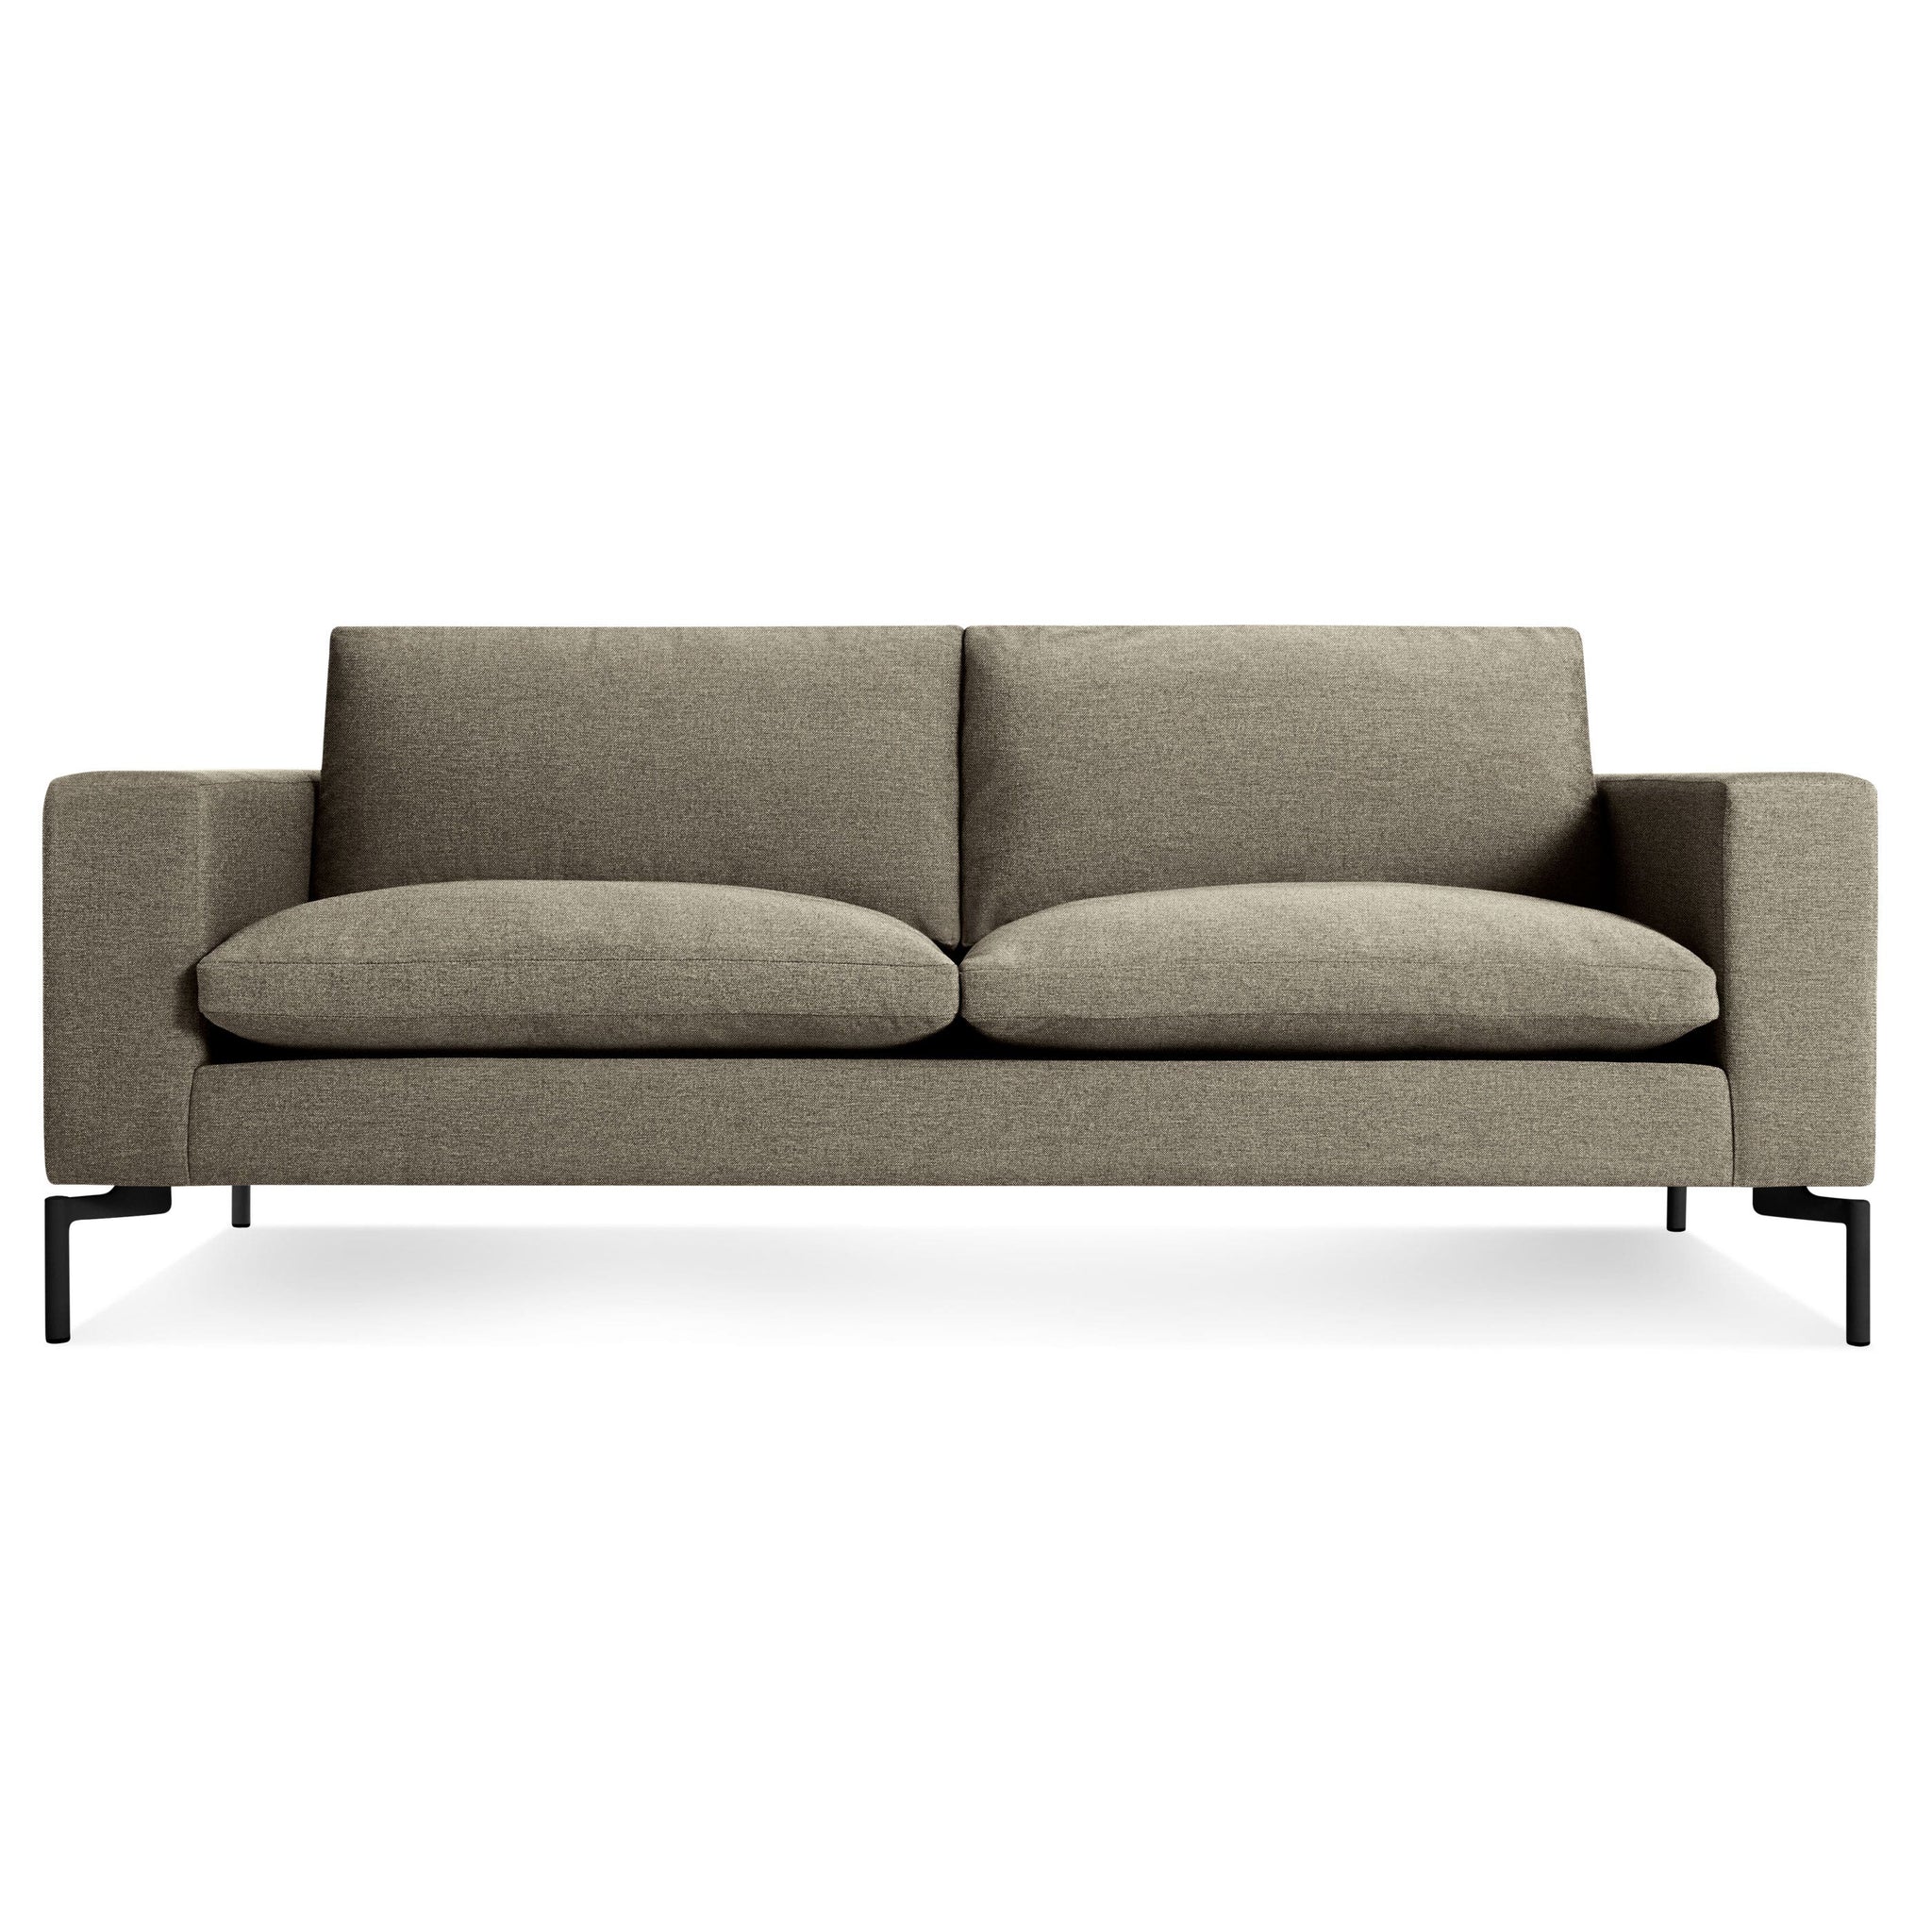 New Standard 78" Sofa